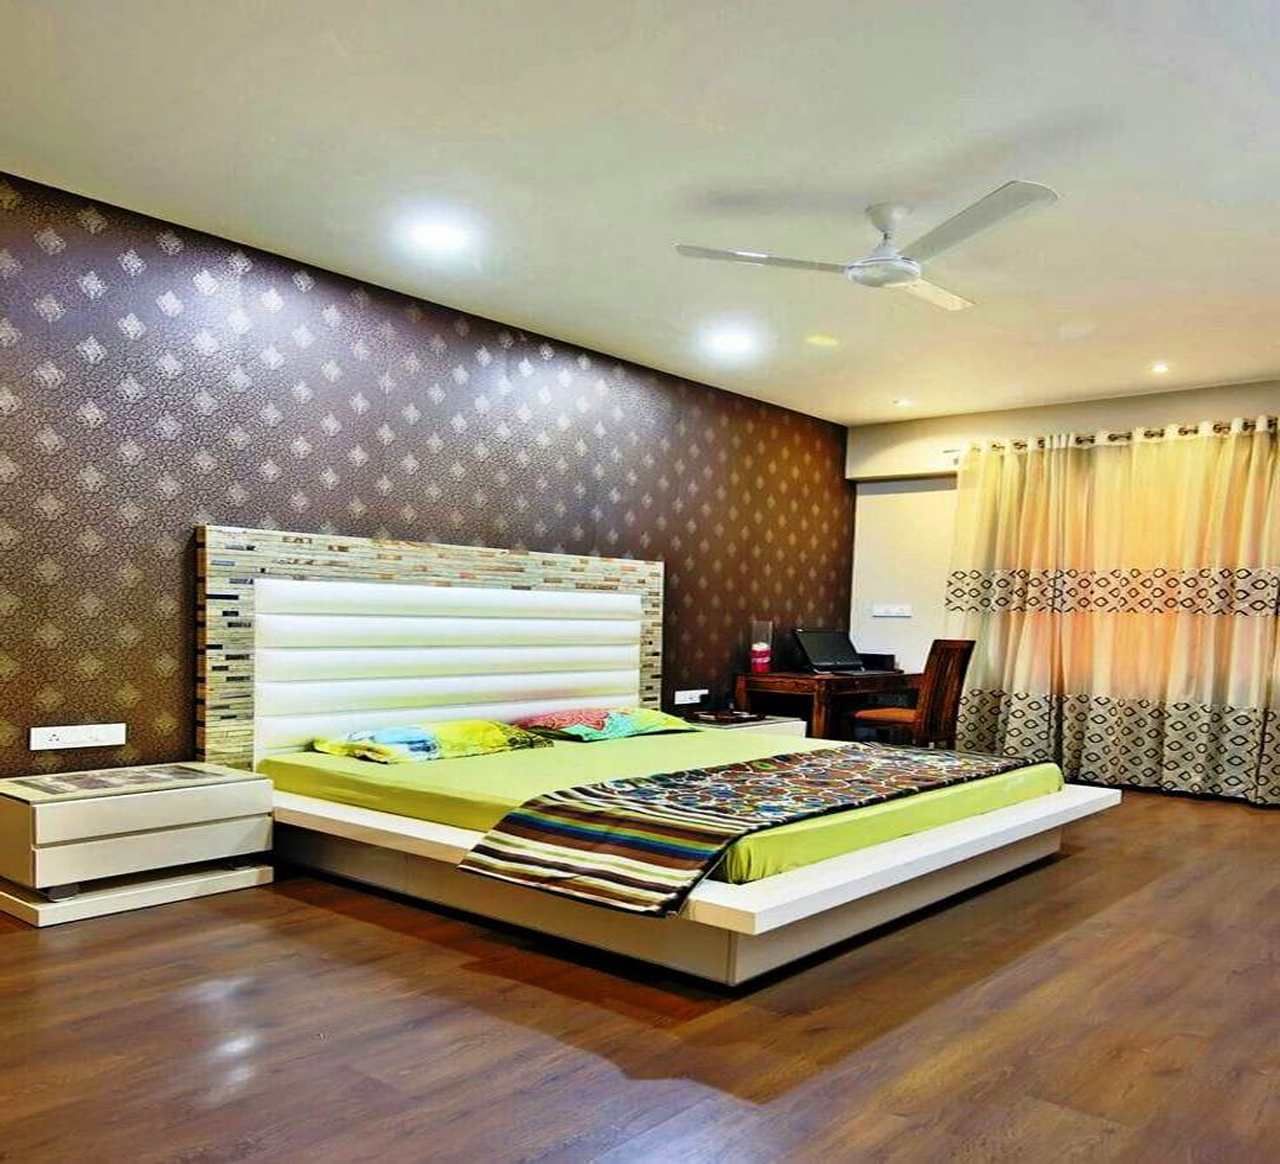 carpenter online warangal,wooden almirah designs for bedroom with price,woodwork rates in warangal,top interior designers in warangal